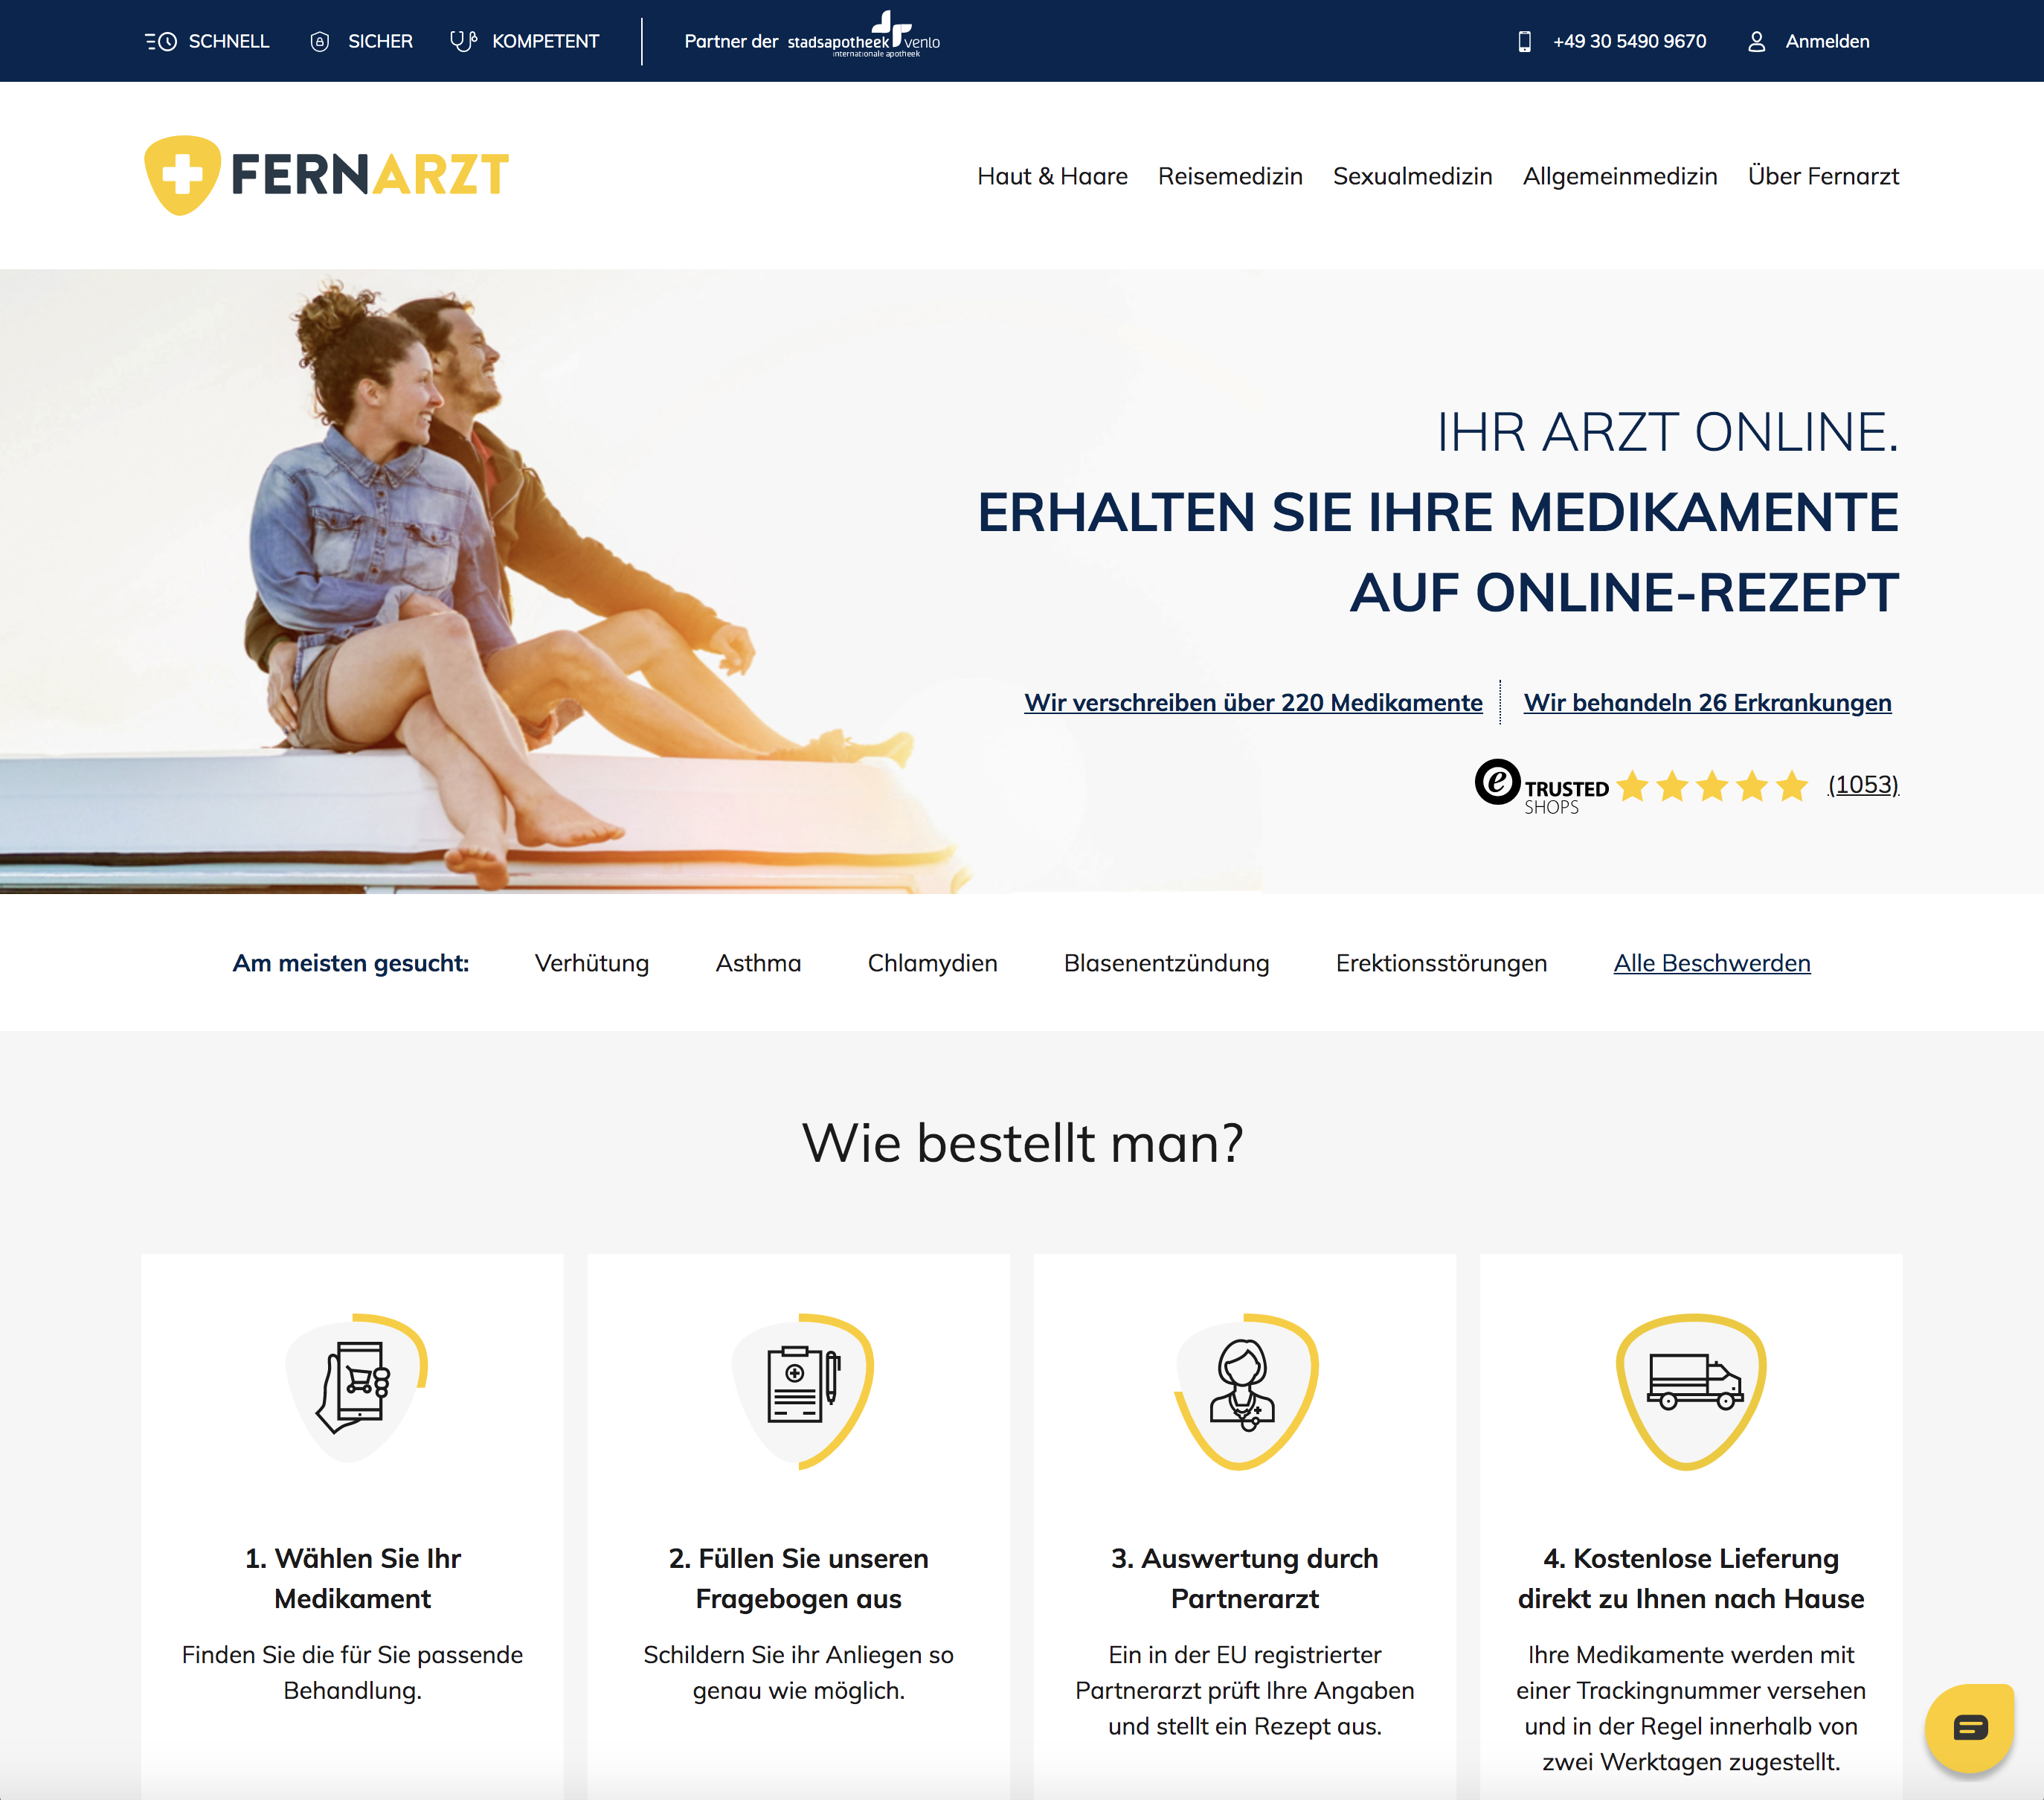 Fernarzt E-Commerce System, A-DIGITAL one